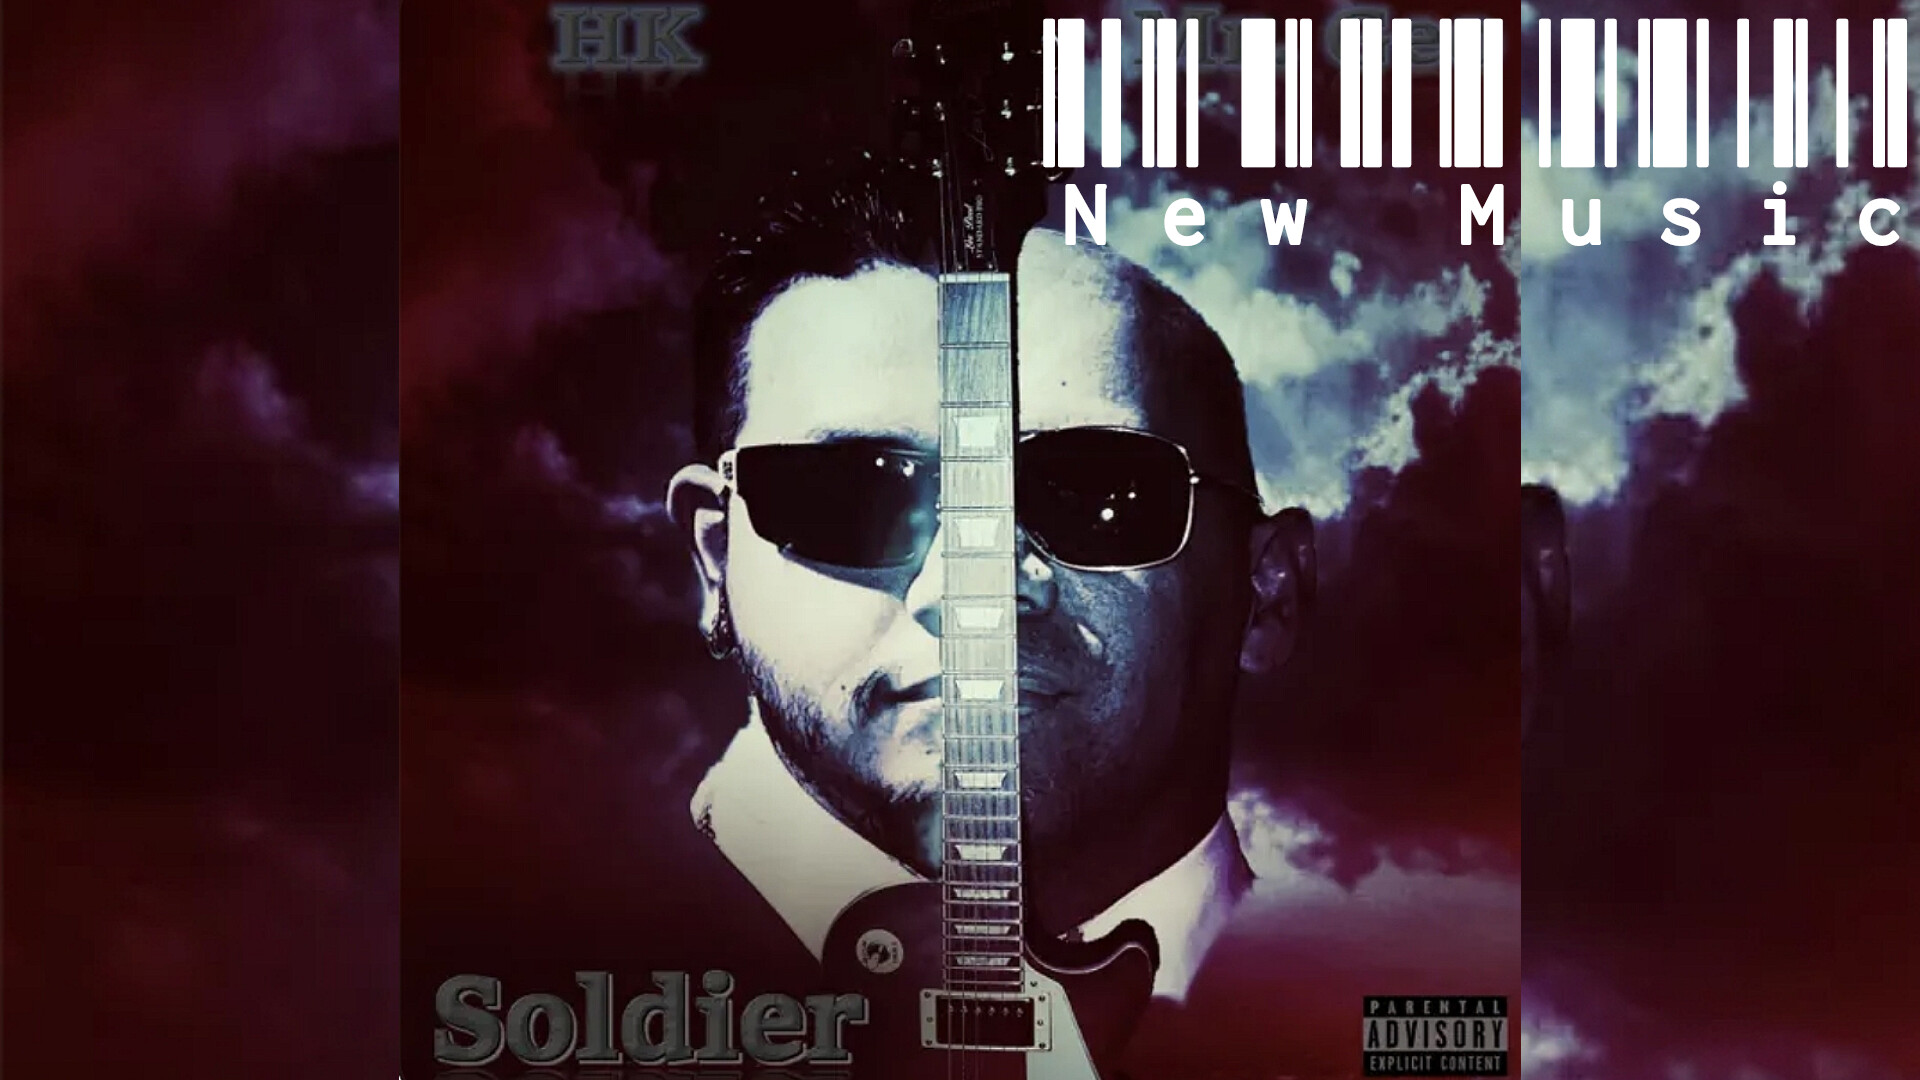 HK & Mr. Geo drop “Soldier” Music Video